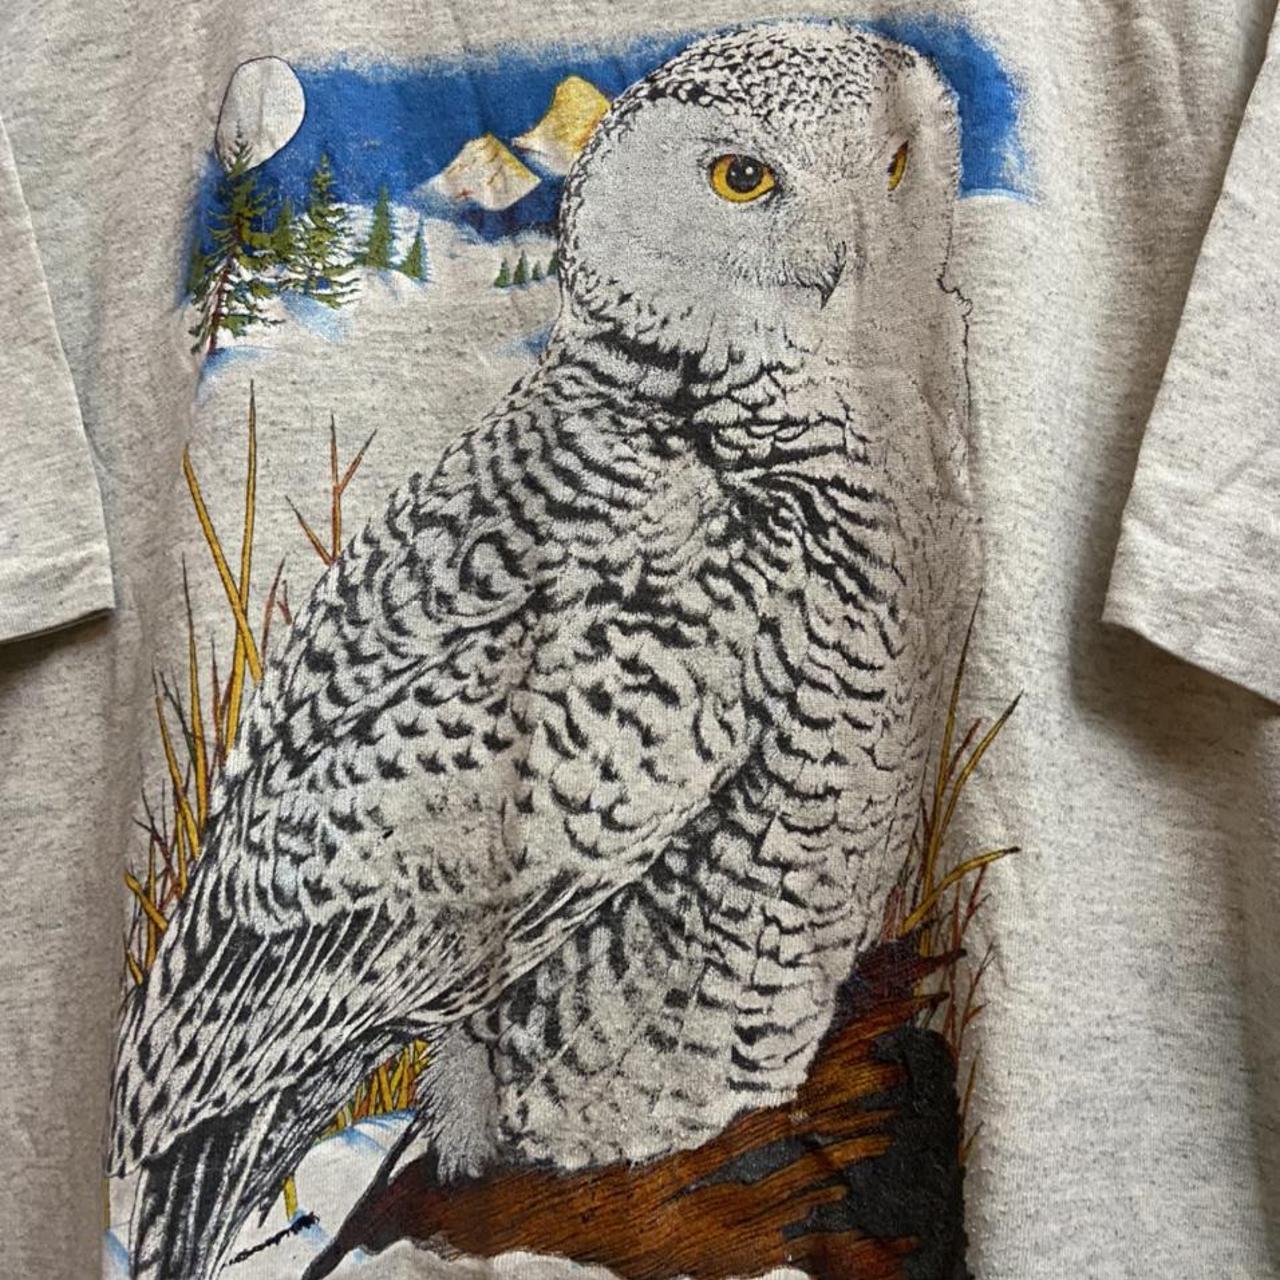 Product Image 2 - Vintage Owl Shirt

Men’s XL fit